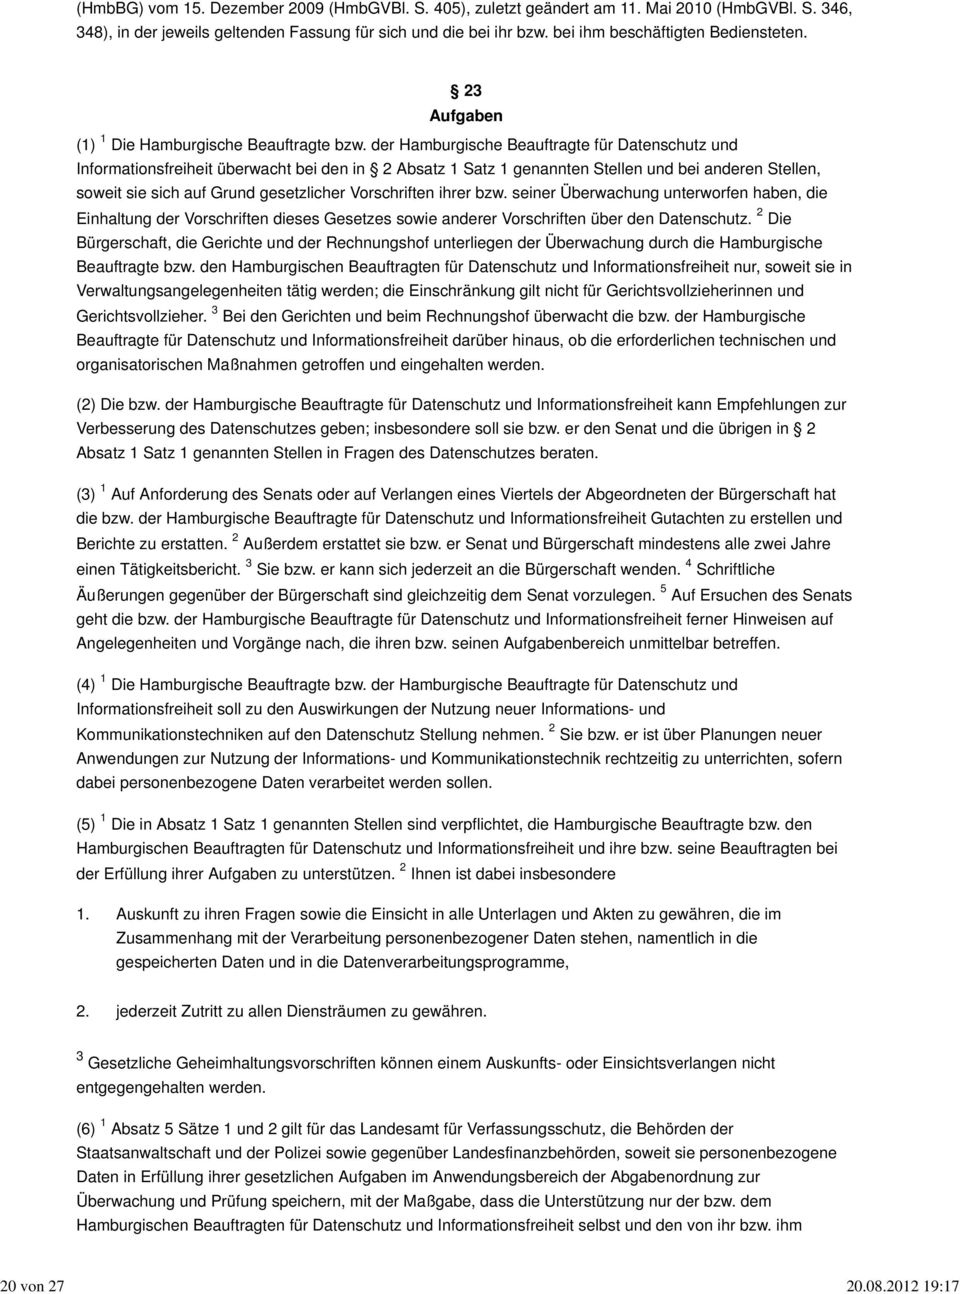 der Hamburgische Beauftragte für Datenschutz und Informationsfreiheit überwacht bei den in 2 Absatz 1 Satz 1 genannten Stellen und bei anderen Stellen, soweit sie sich auf Grund gesetzlicher